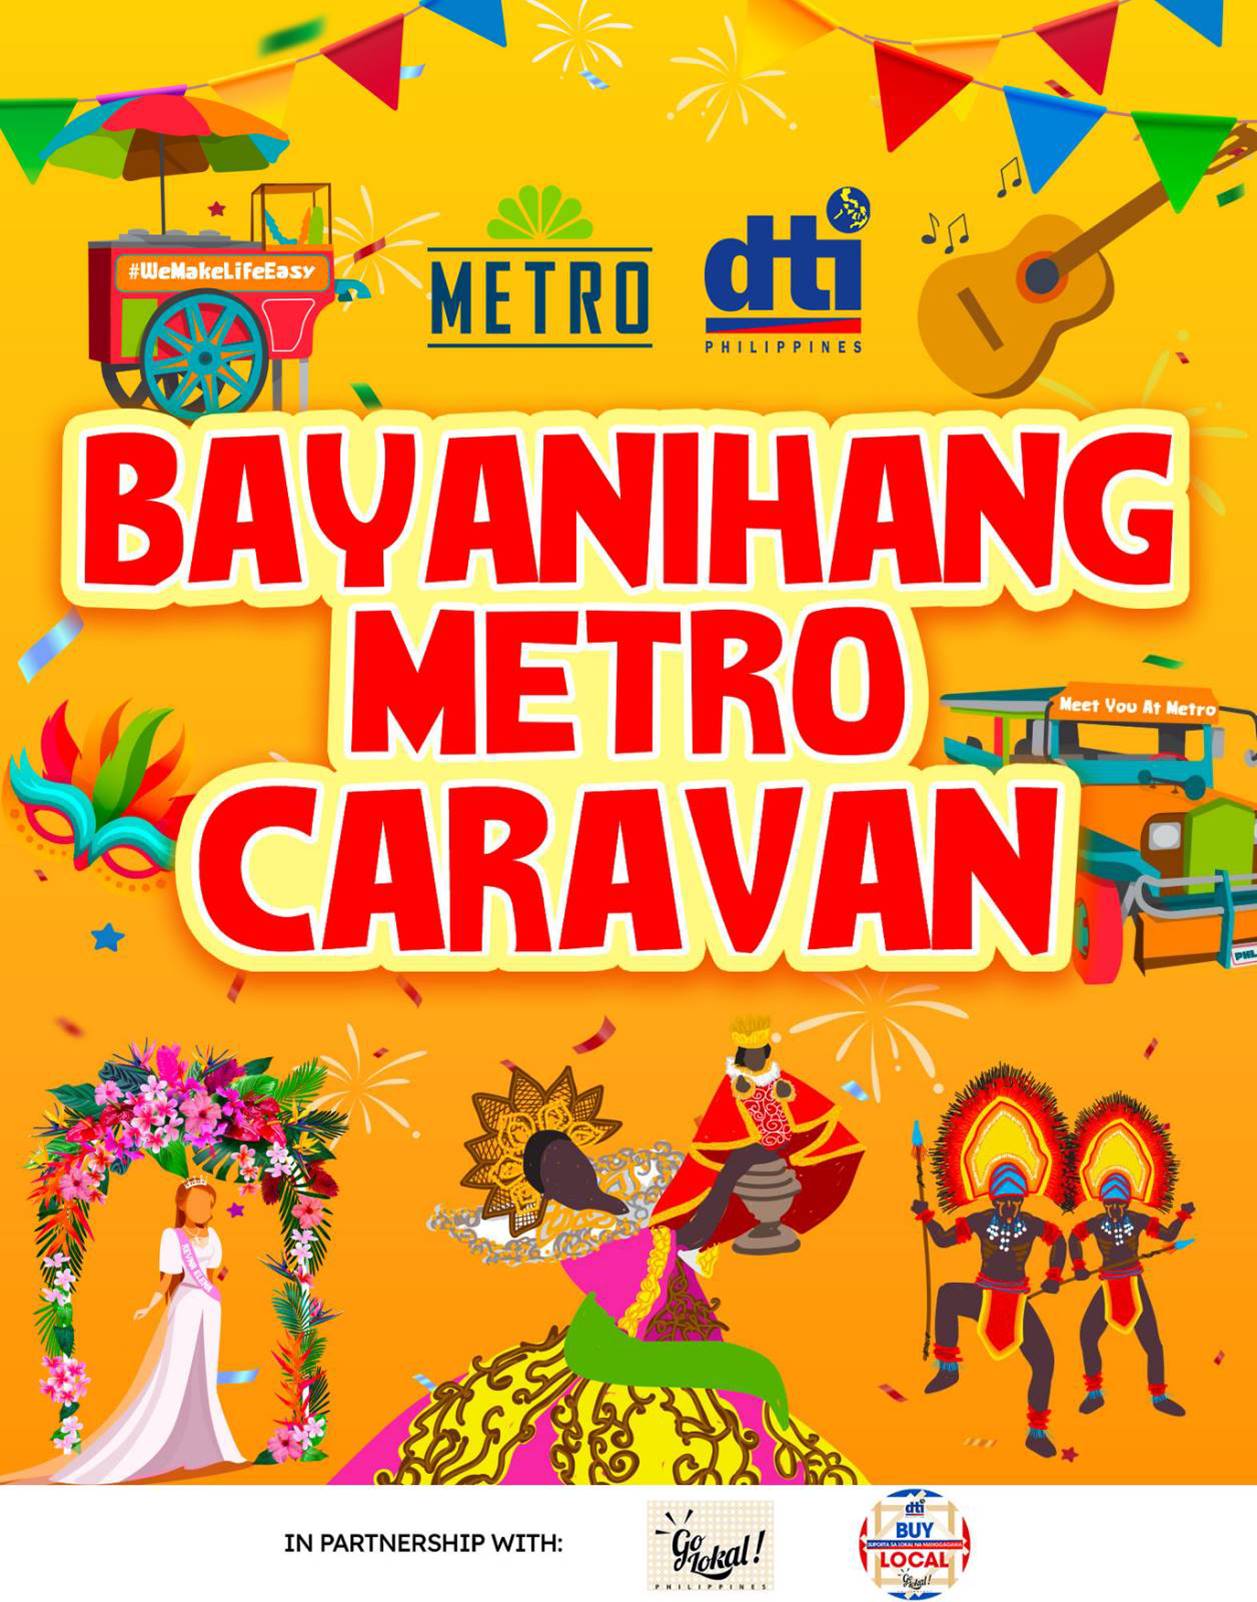 Bayanihang Metro Caravan